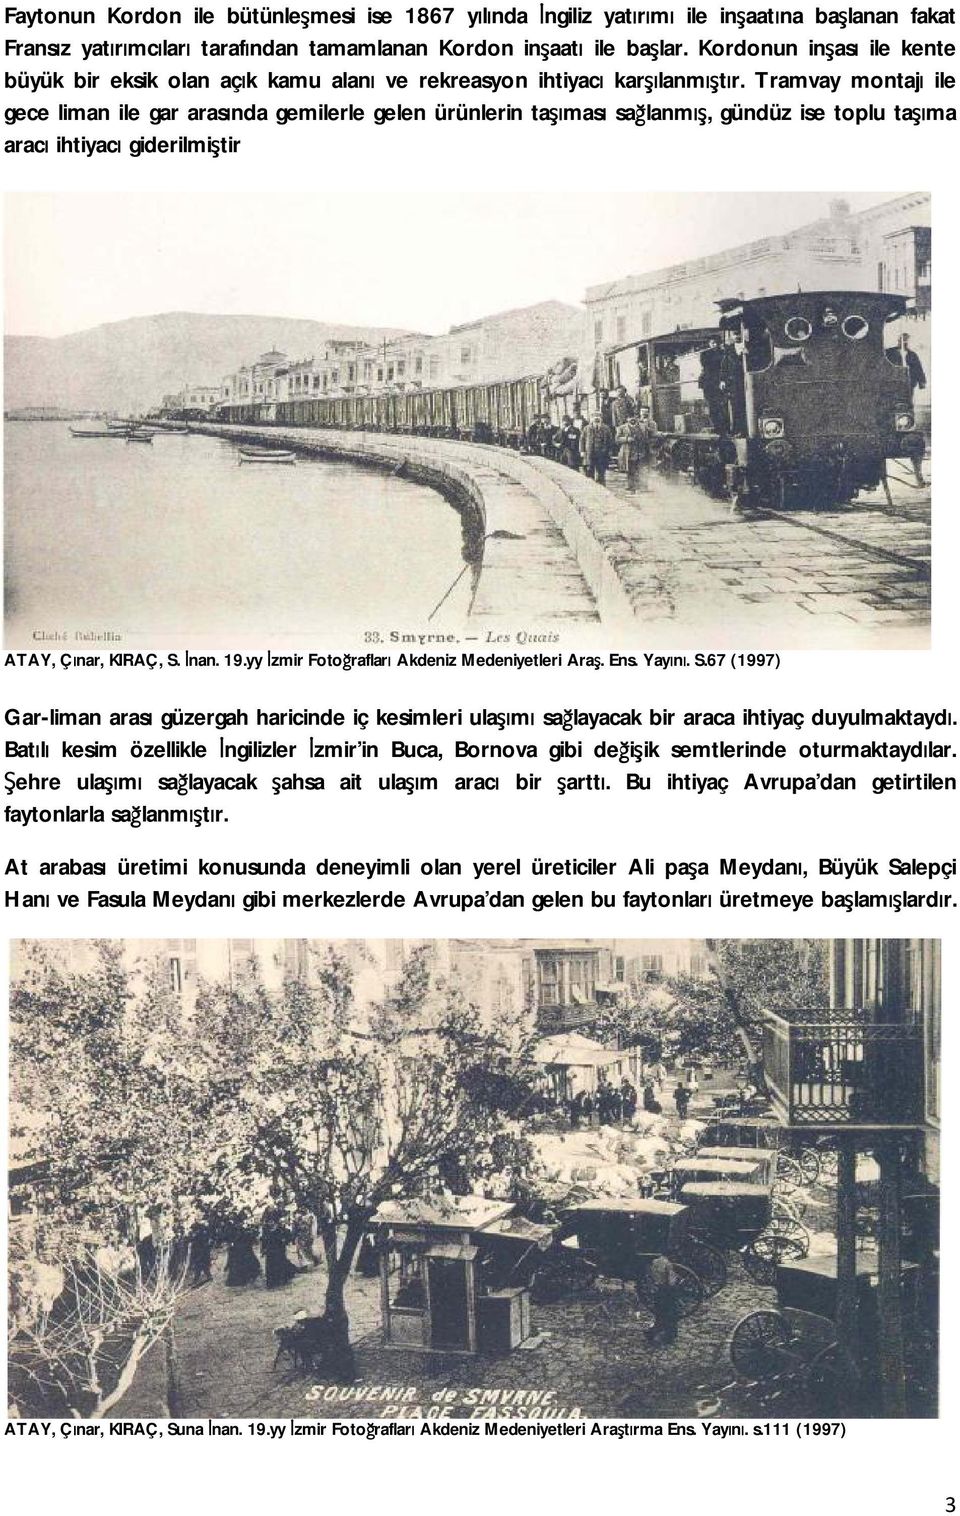 Tramvay montajı ile gece liman ile gar arasında gemilerle gelen ürünlerin taşıması sağlanmış, gündüz ise toplu taşıma aracı ihtiyacı giderilmiştir ATAY, Çınar, KIRAÇ, S. İnan. 19.